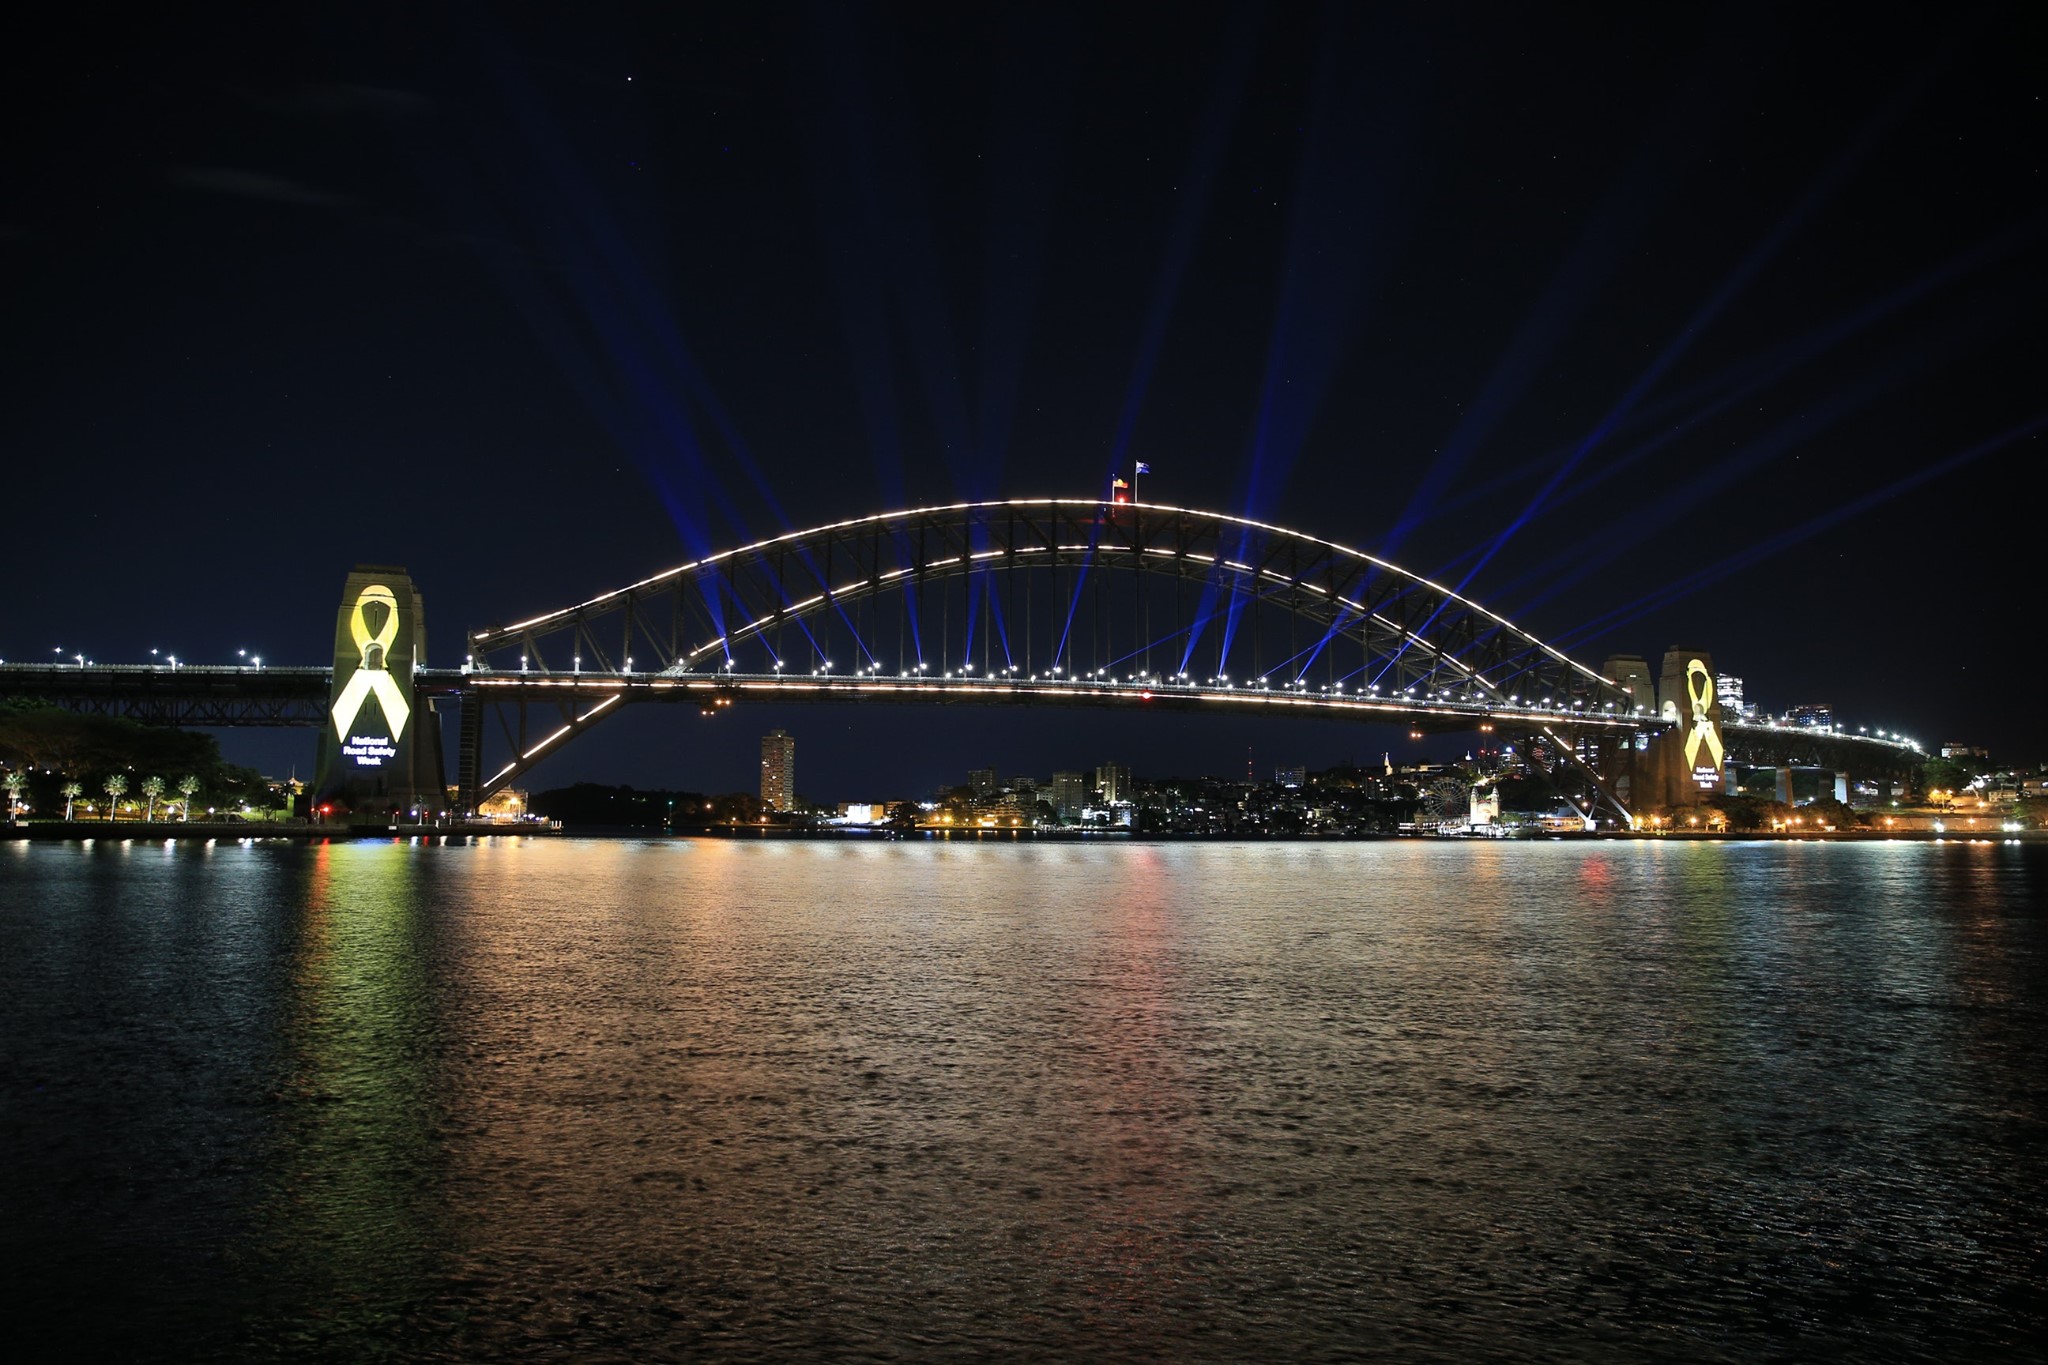 Sydney Harbour bridge lit up - Road Safety Week